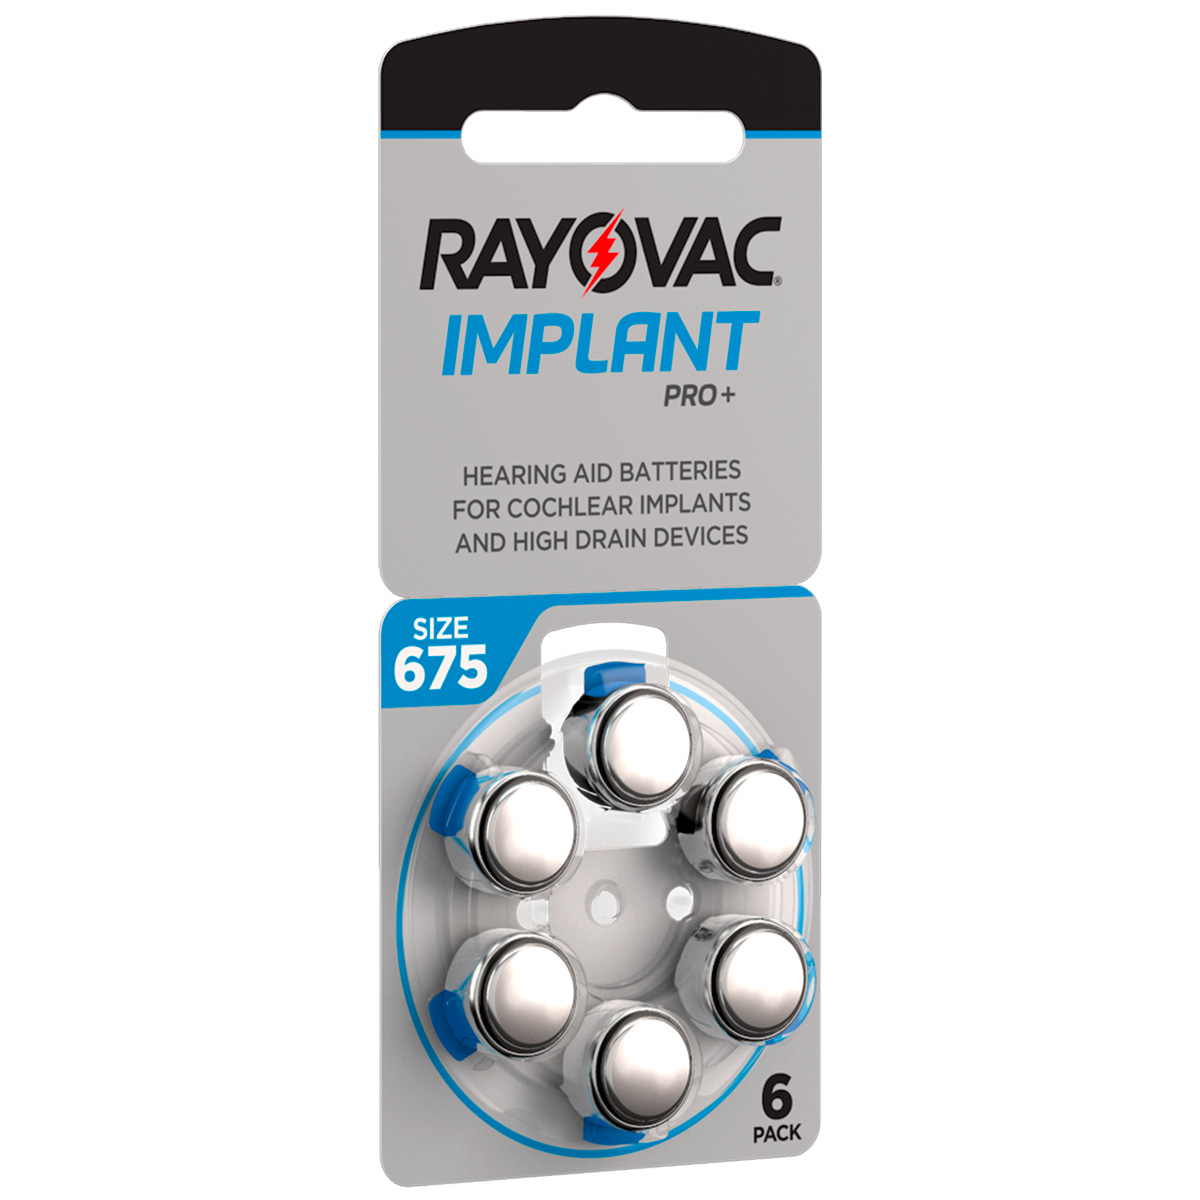 Rayovac Implant Pro+, 6 piles auditives No. 675pour les implants cochléaires, plaquette